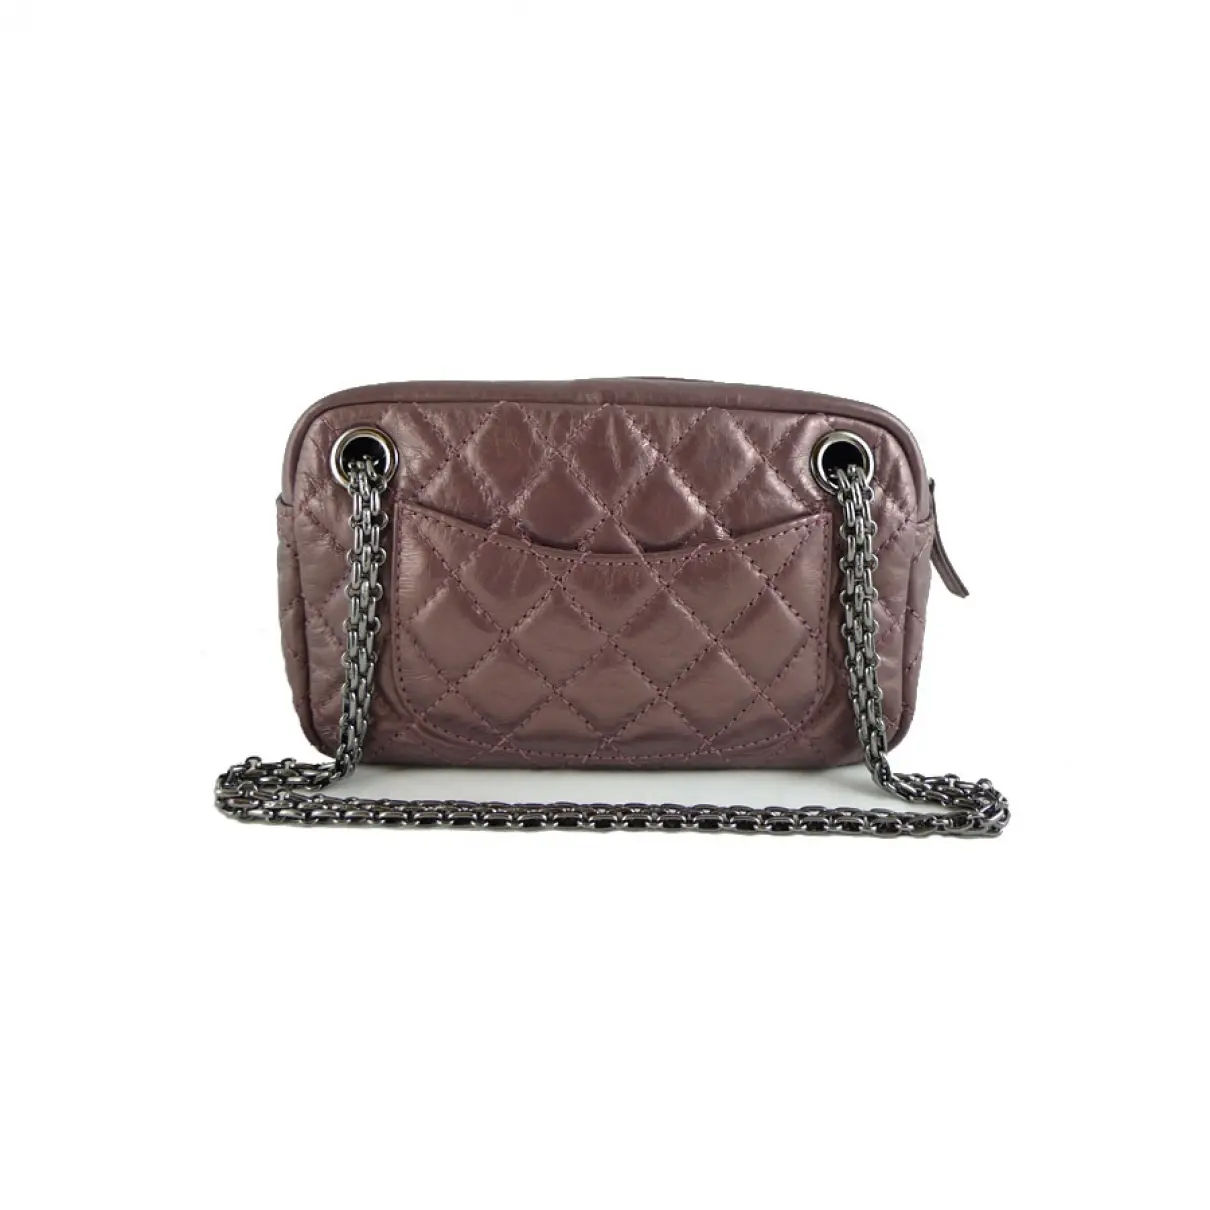 Chanel Camera leather handbag for sale - Vintage